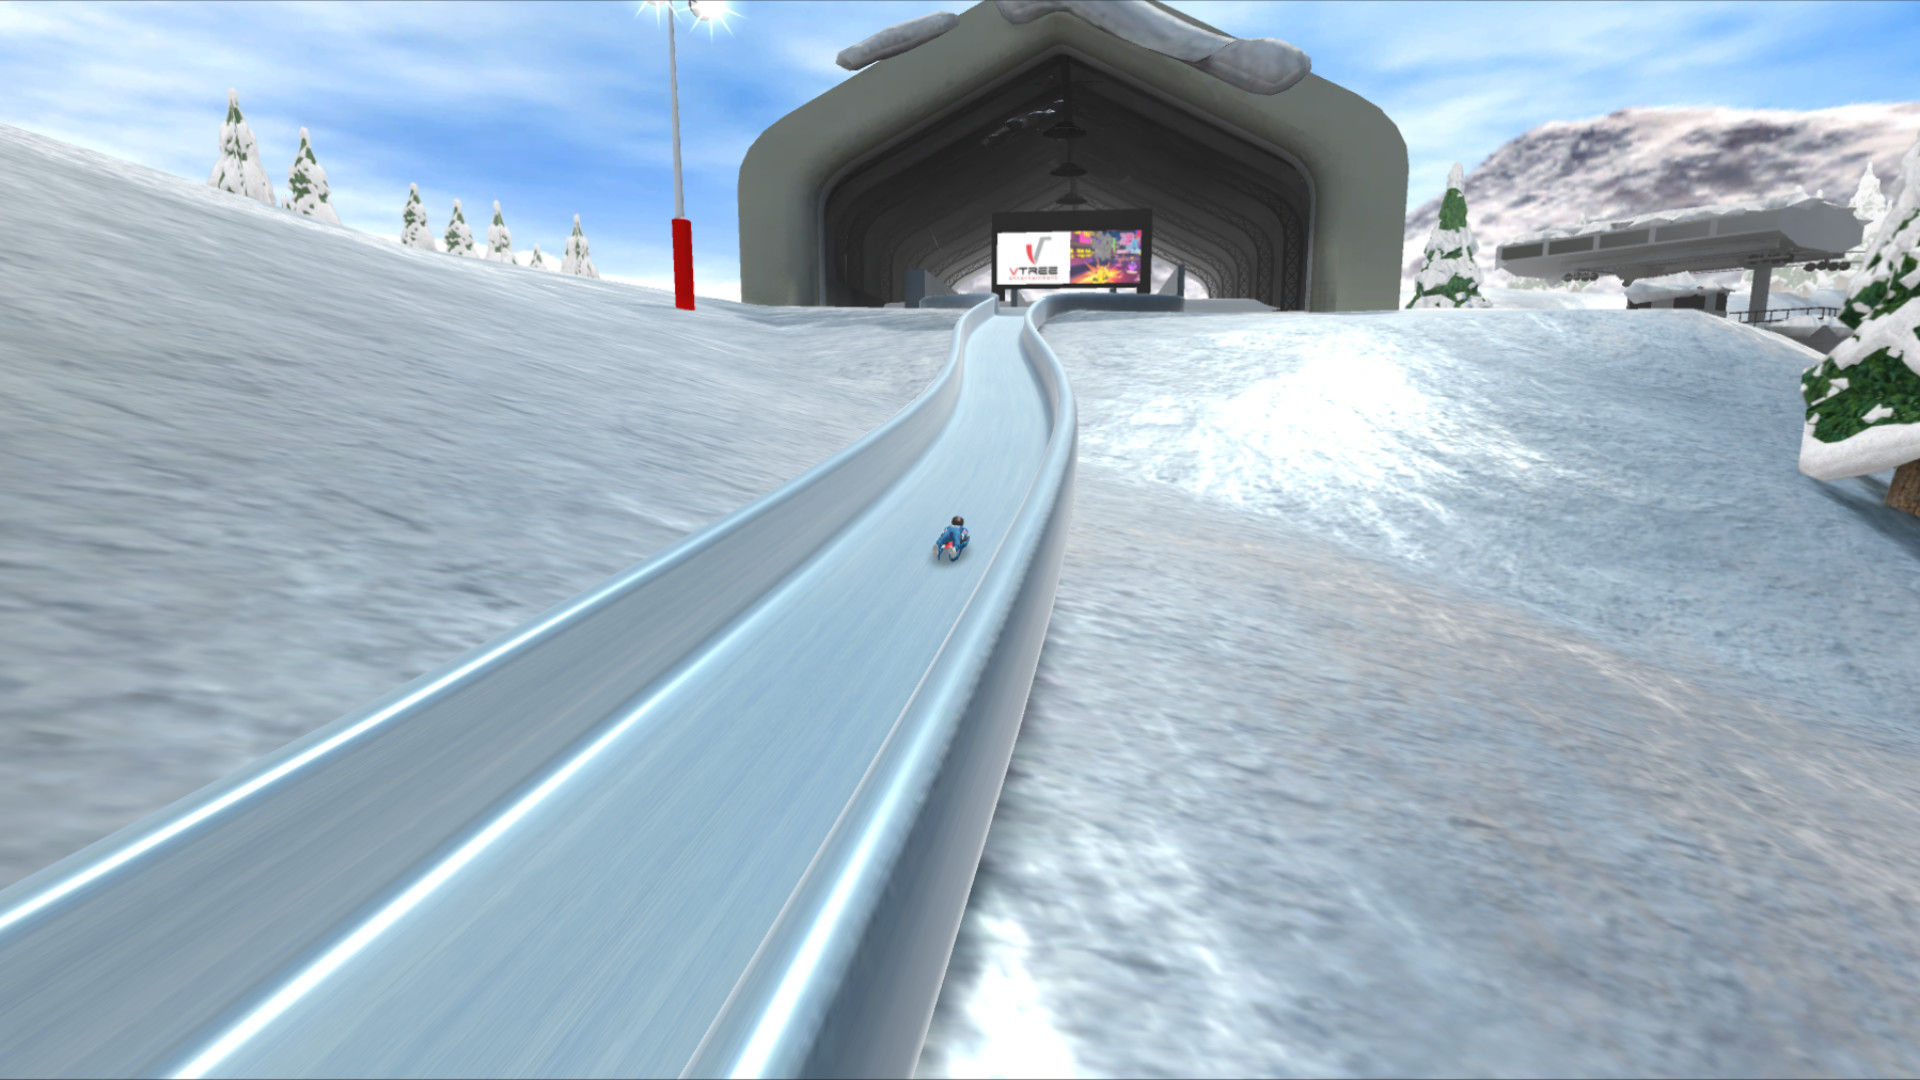 BSL Winter Games Challenge screenshot